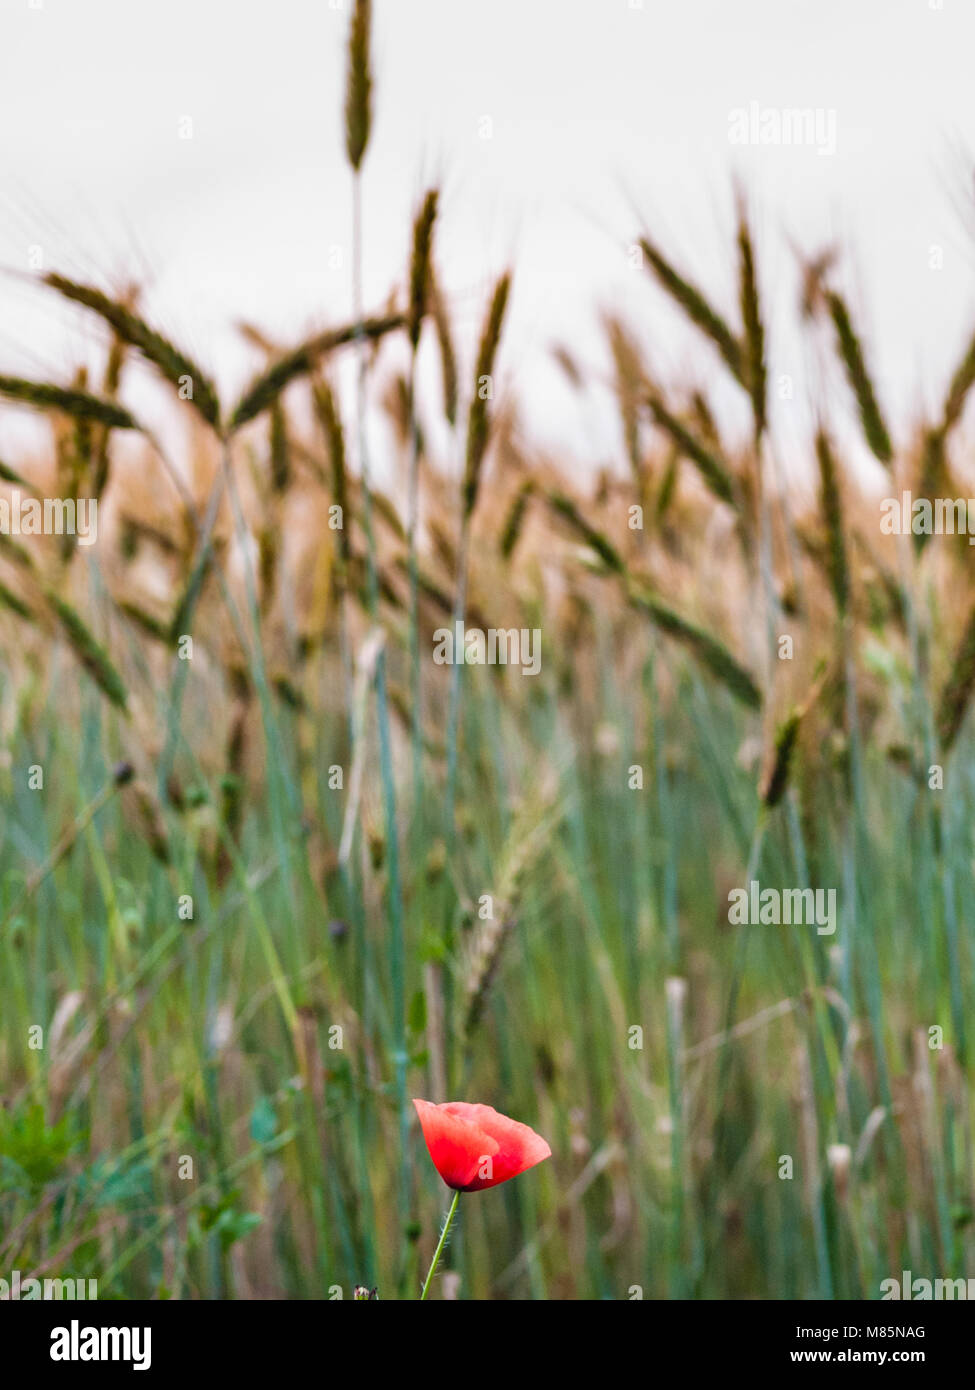 Campo de amapolas rojas en la primavera, campo de trigo fondo con mazorcas maduras Foto de stock